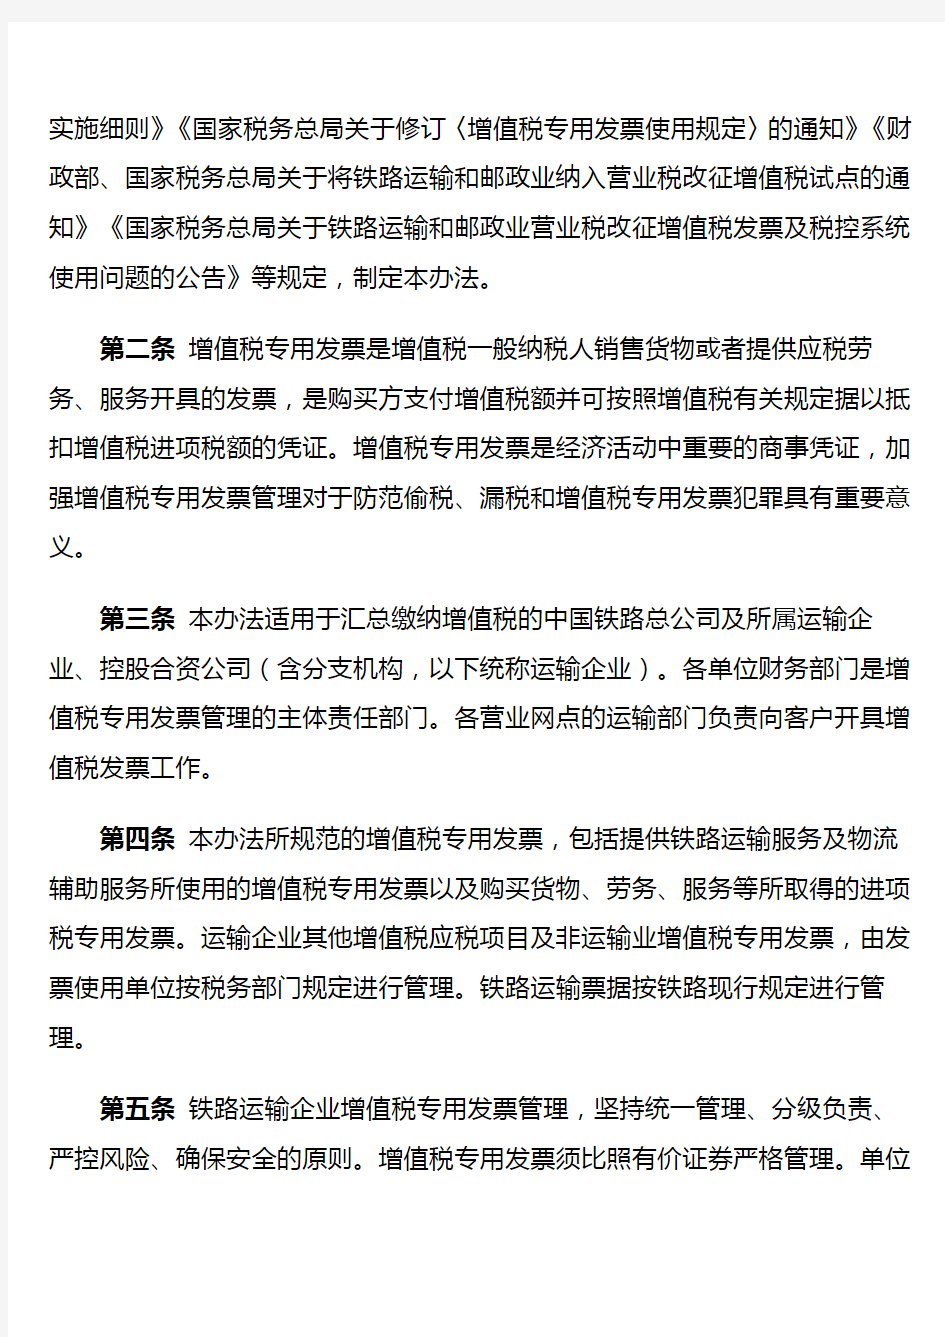 中国铁路总公司增值税专用发票管理办法